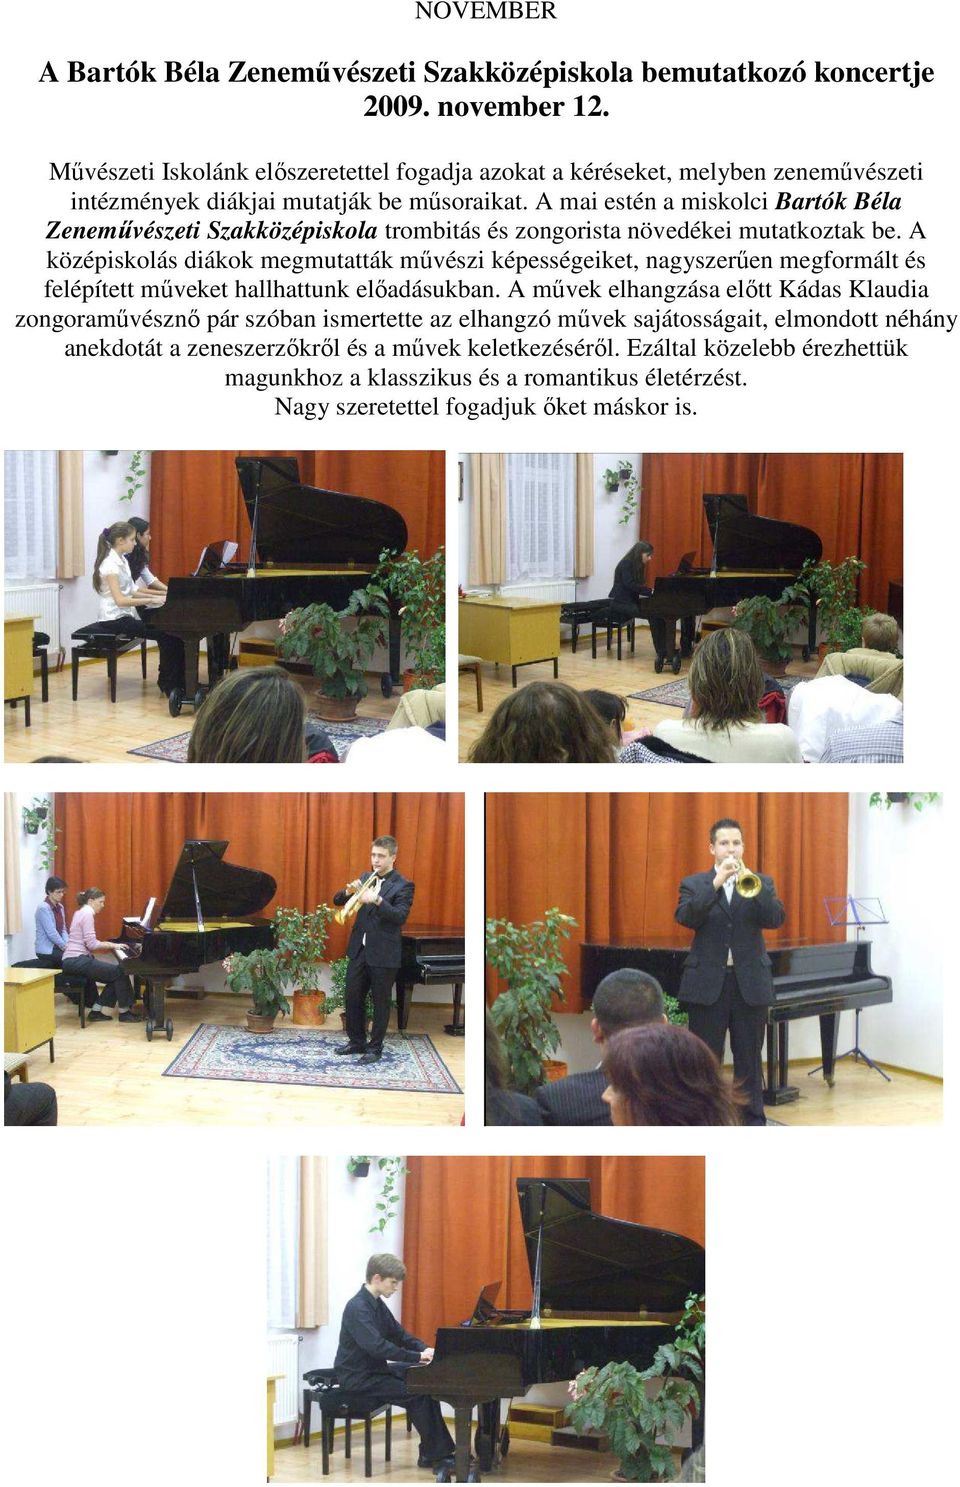 A mai estén a miskolci Bartók Béla Zeneművészeti Szakközépiskola trombitás és zongorista növedékei mutatkoztak be.